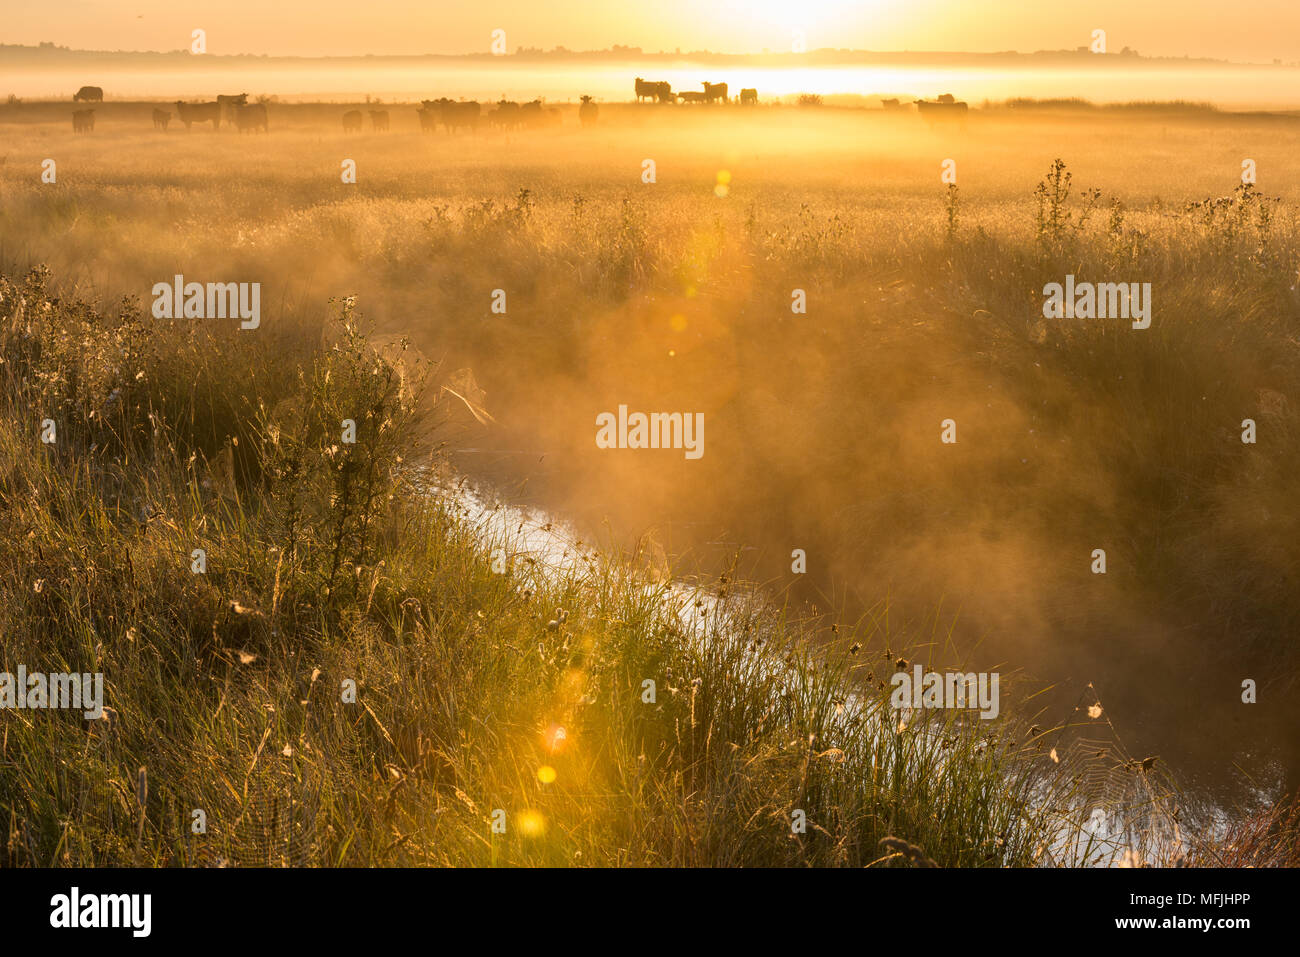 Vue sur les zones du pâturage côtières au lever du soleil, l'habitat de marais Marais Elmley National Nature Reserve, à l'île de Sheppey, Kent, Angleterre, Royaume-Uni, Europe Banque D'Images